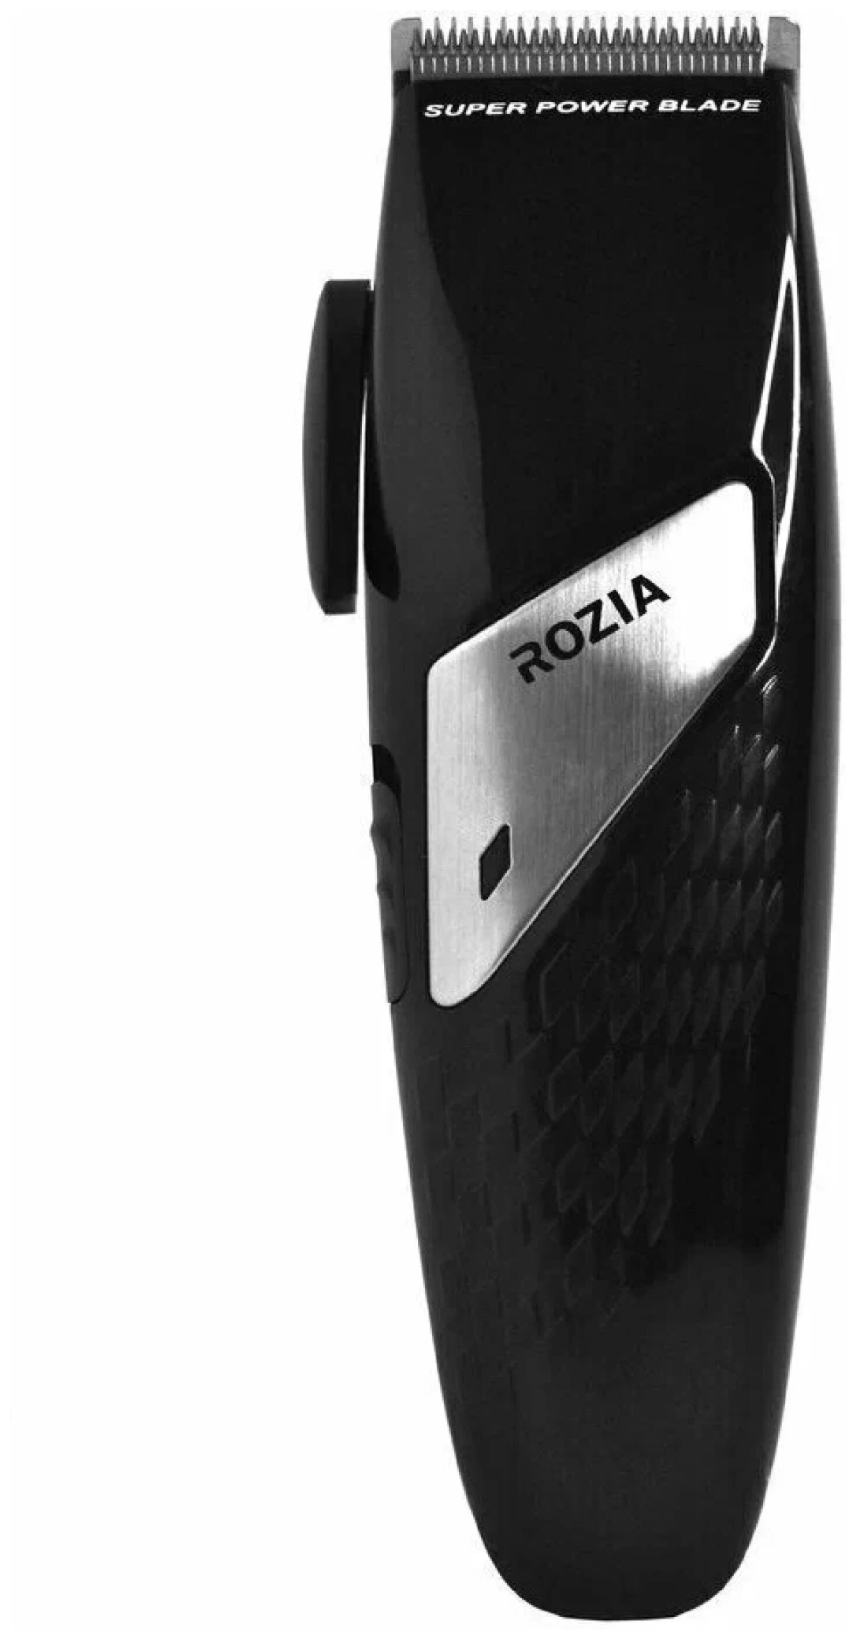 Машинка для стрижки волос Rozia, триммер для стрижки волос, профессиональный триммер